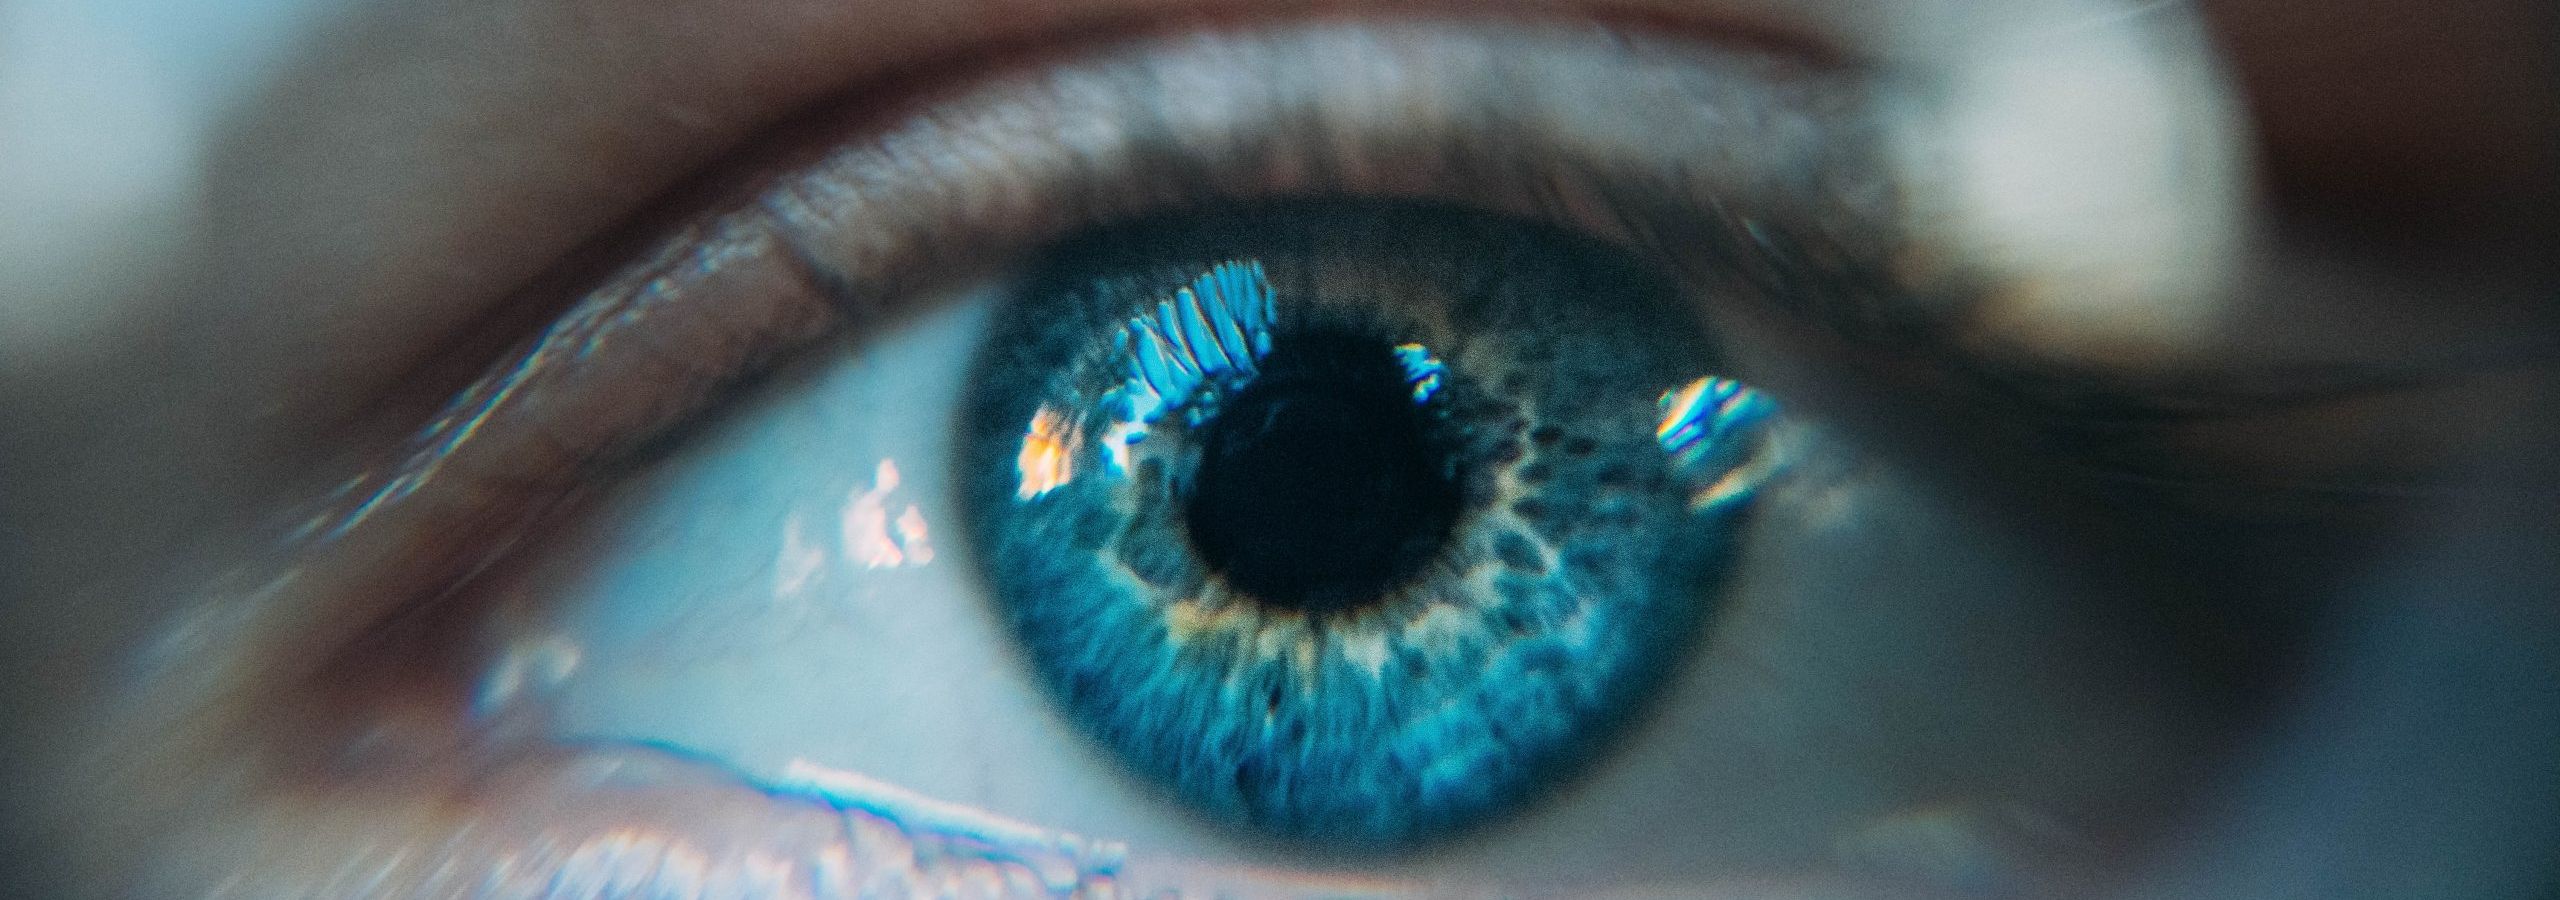 close-up of eye close-up of eye close-up of eye close-up of eye close-up of eye close-up of eye